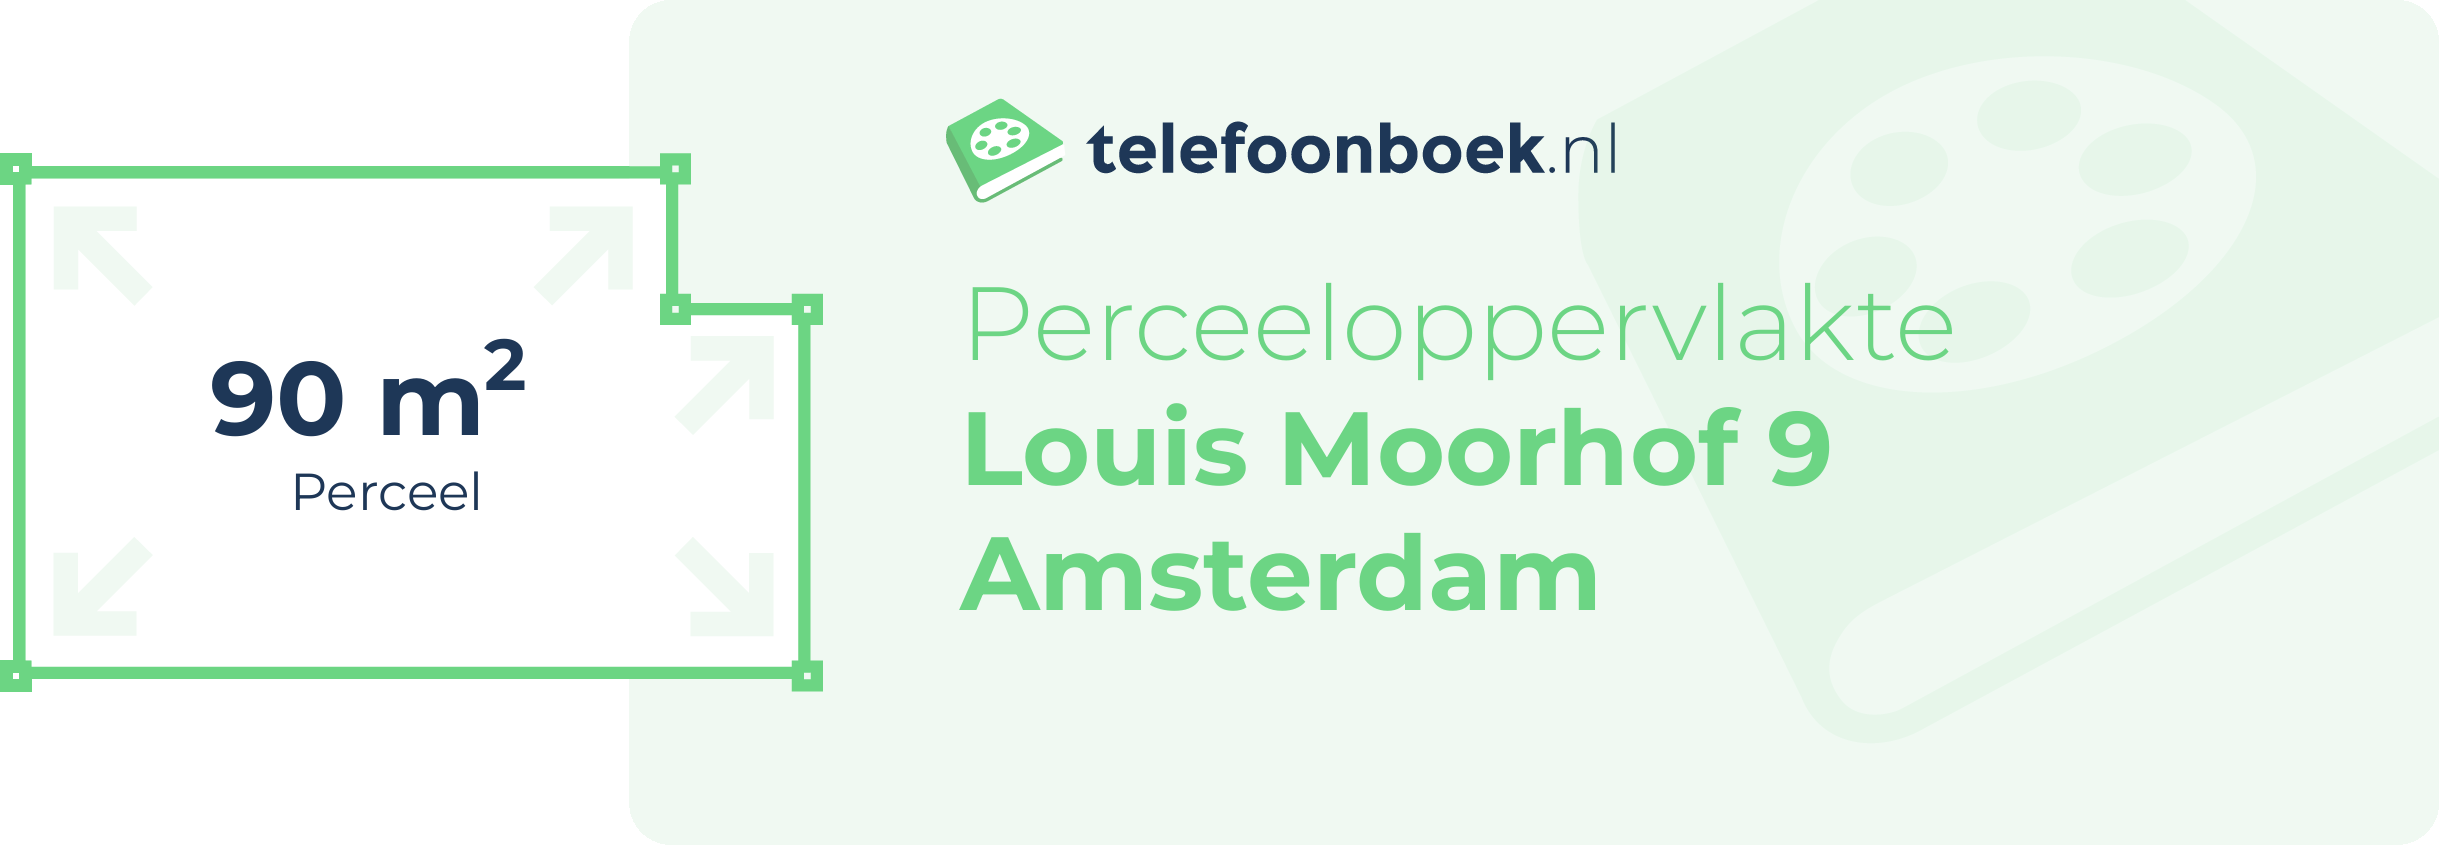 Perceeloppervlakte Louis Moorhof 9 Amsterdam